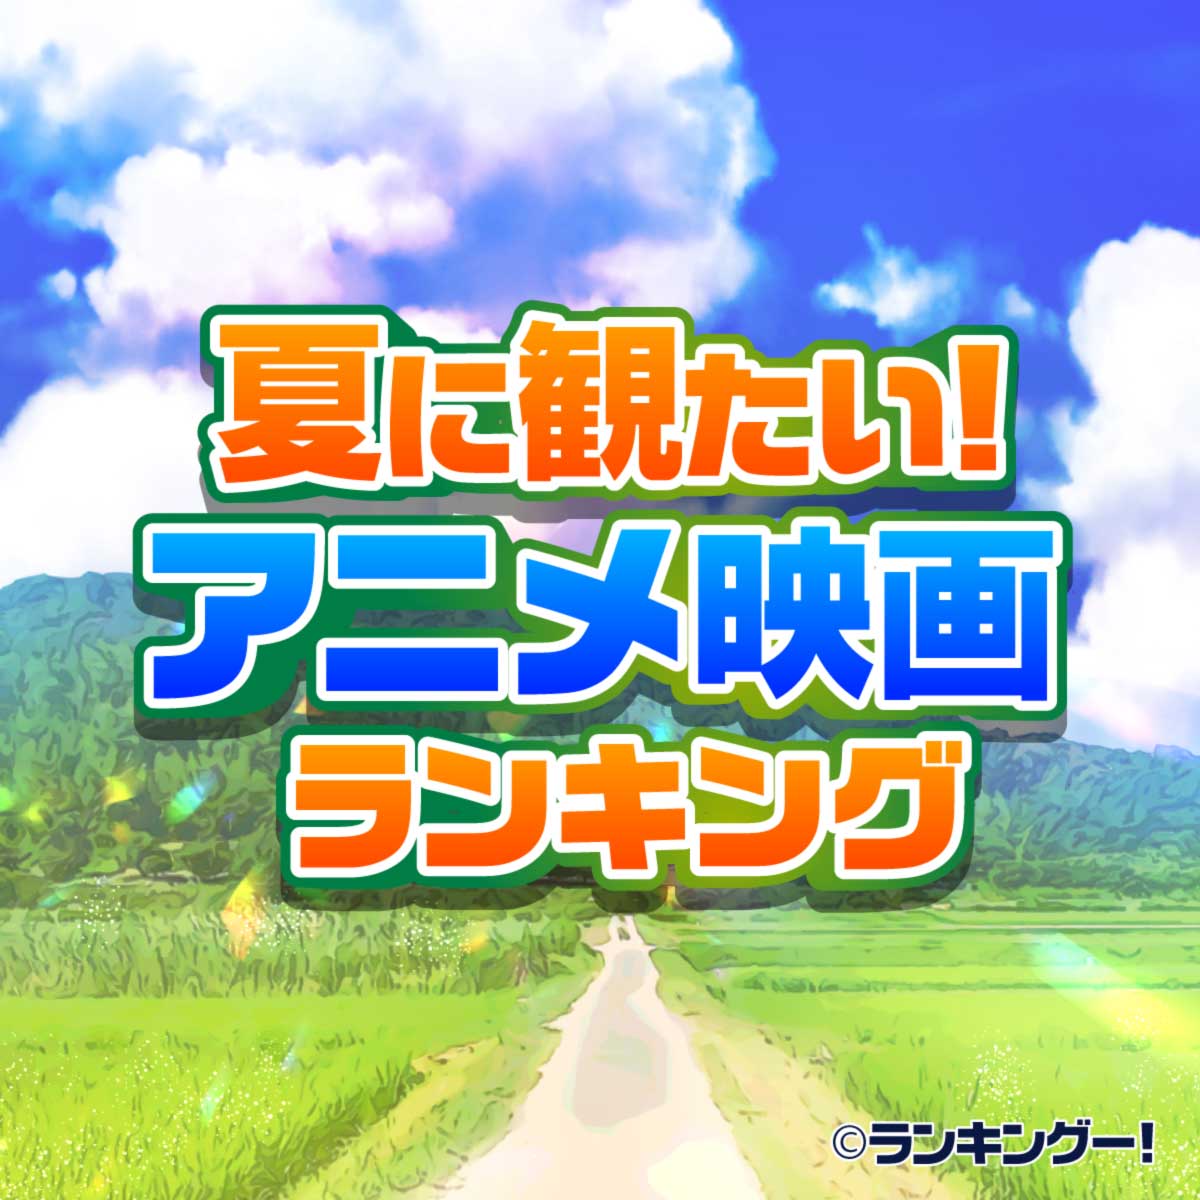 夏におすすめ エモいアニメ映画ランキングtop 感動の名作 16 位 ランキングー